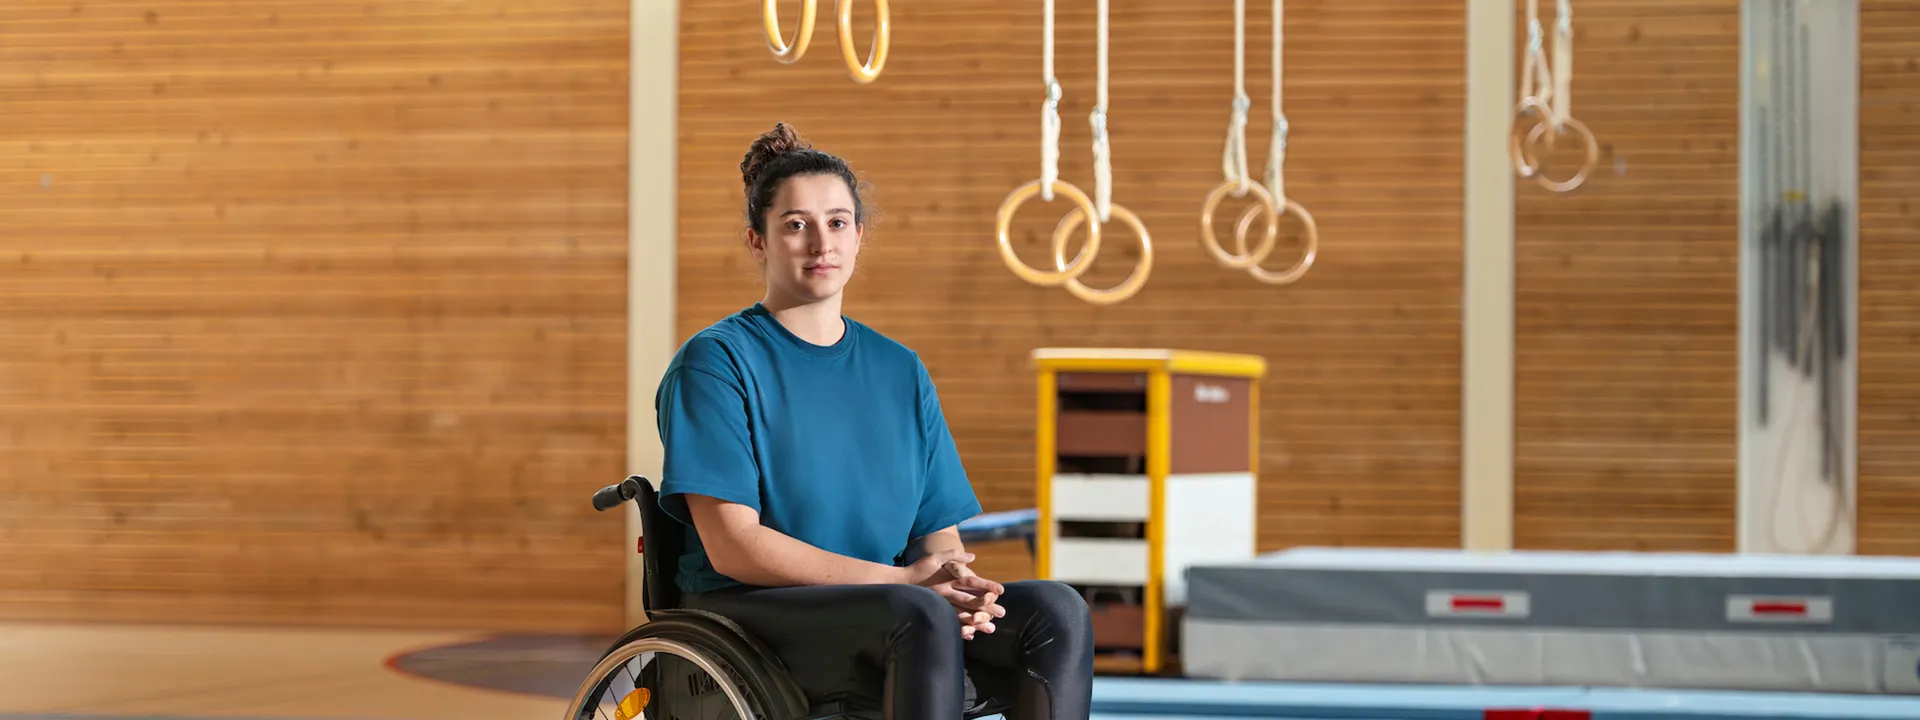 Giulia Damiano est assise dans son fauteuil roulant dans une salle de gymnastique.